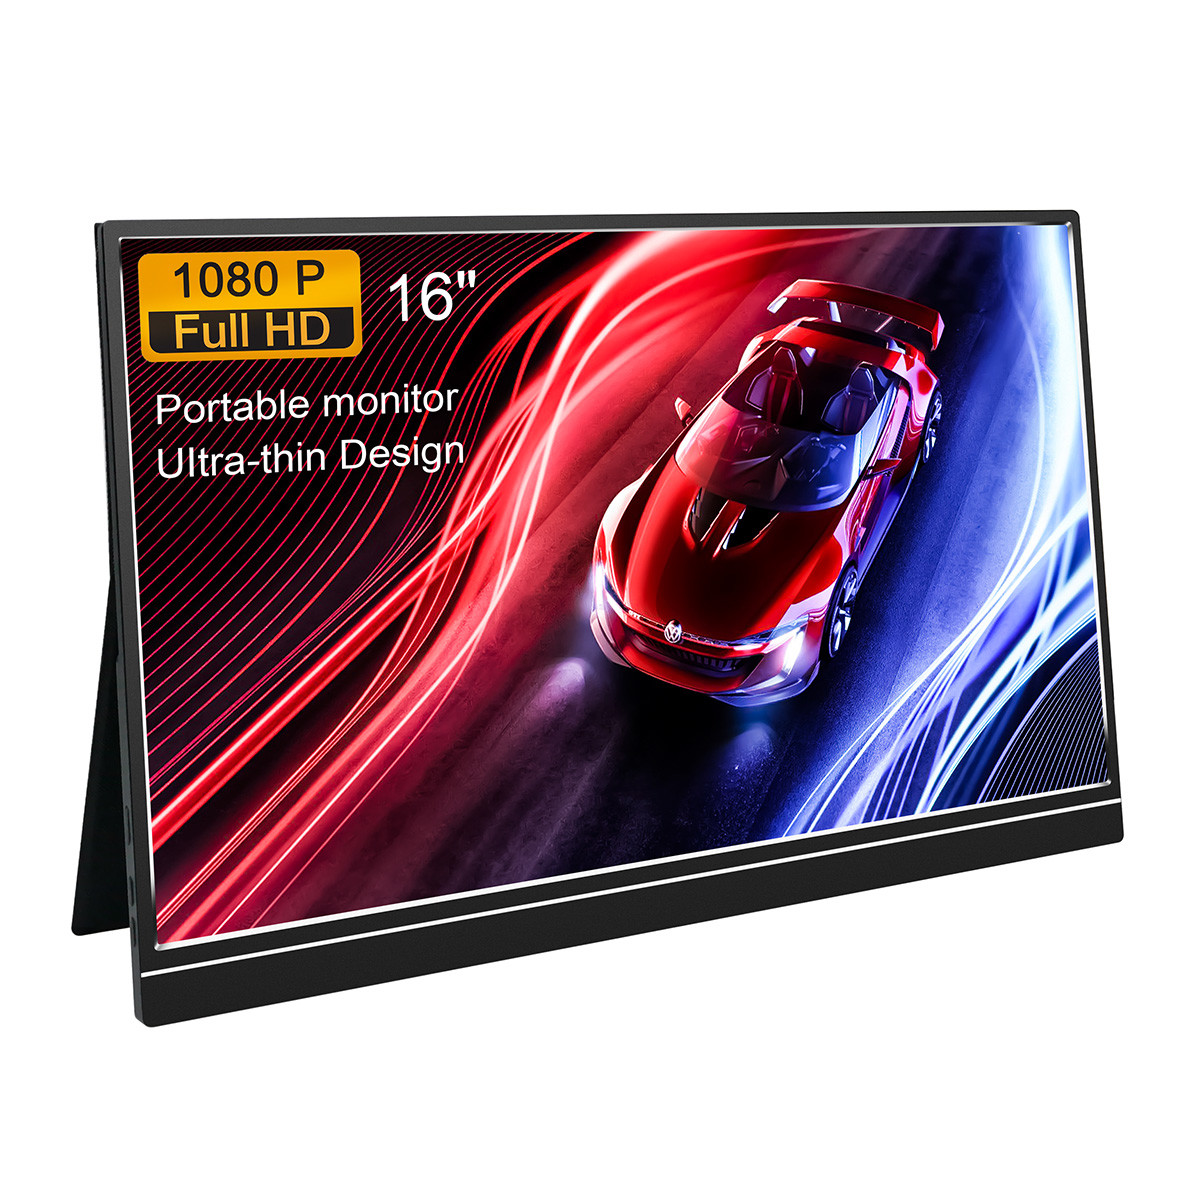 peso 705g do 1000:1 da exposição de 1080P HDR monitor portátil de 16 polegadas